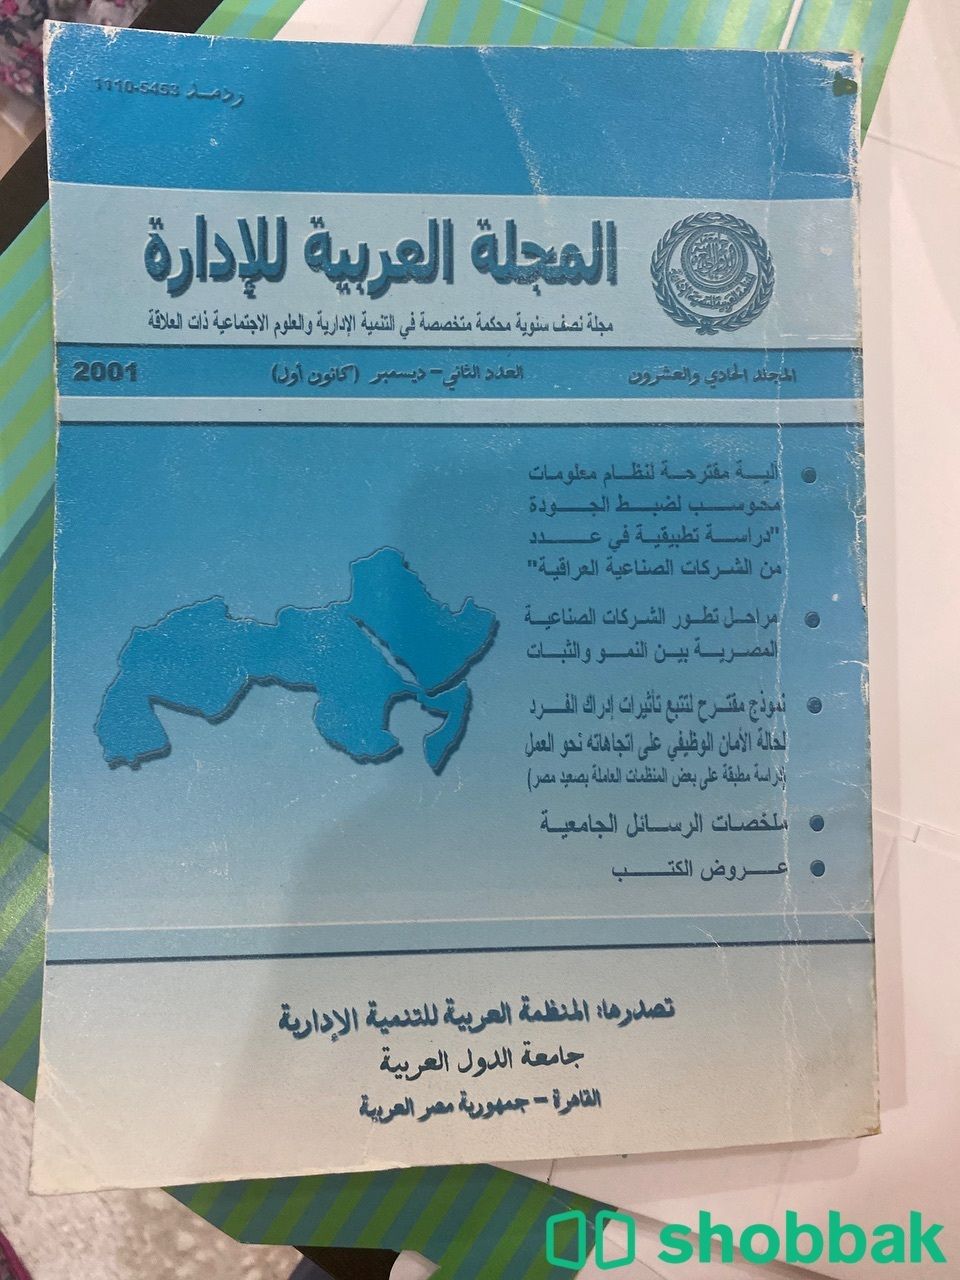 المجلة العربية للإدارة العدد الثاني ٢٠٠١  شباك السعودية